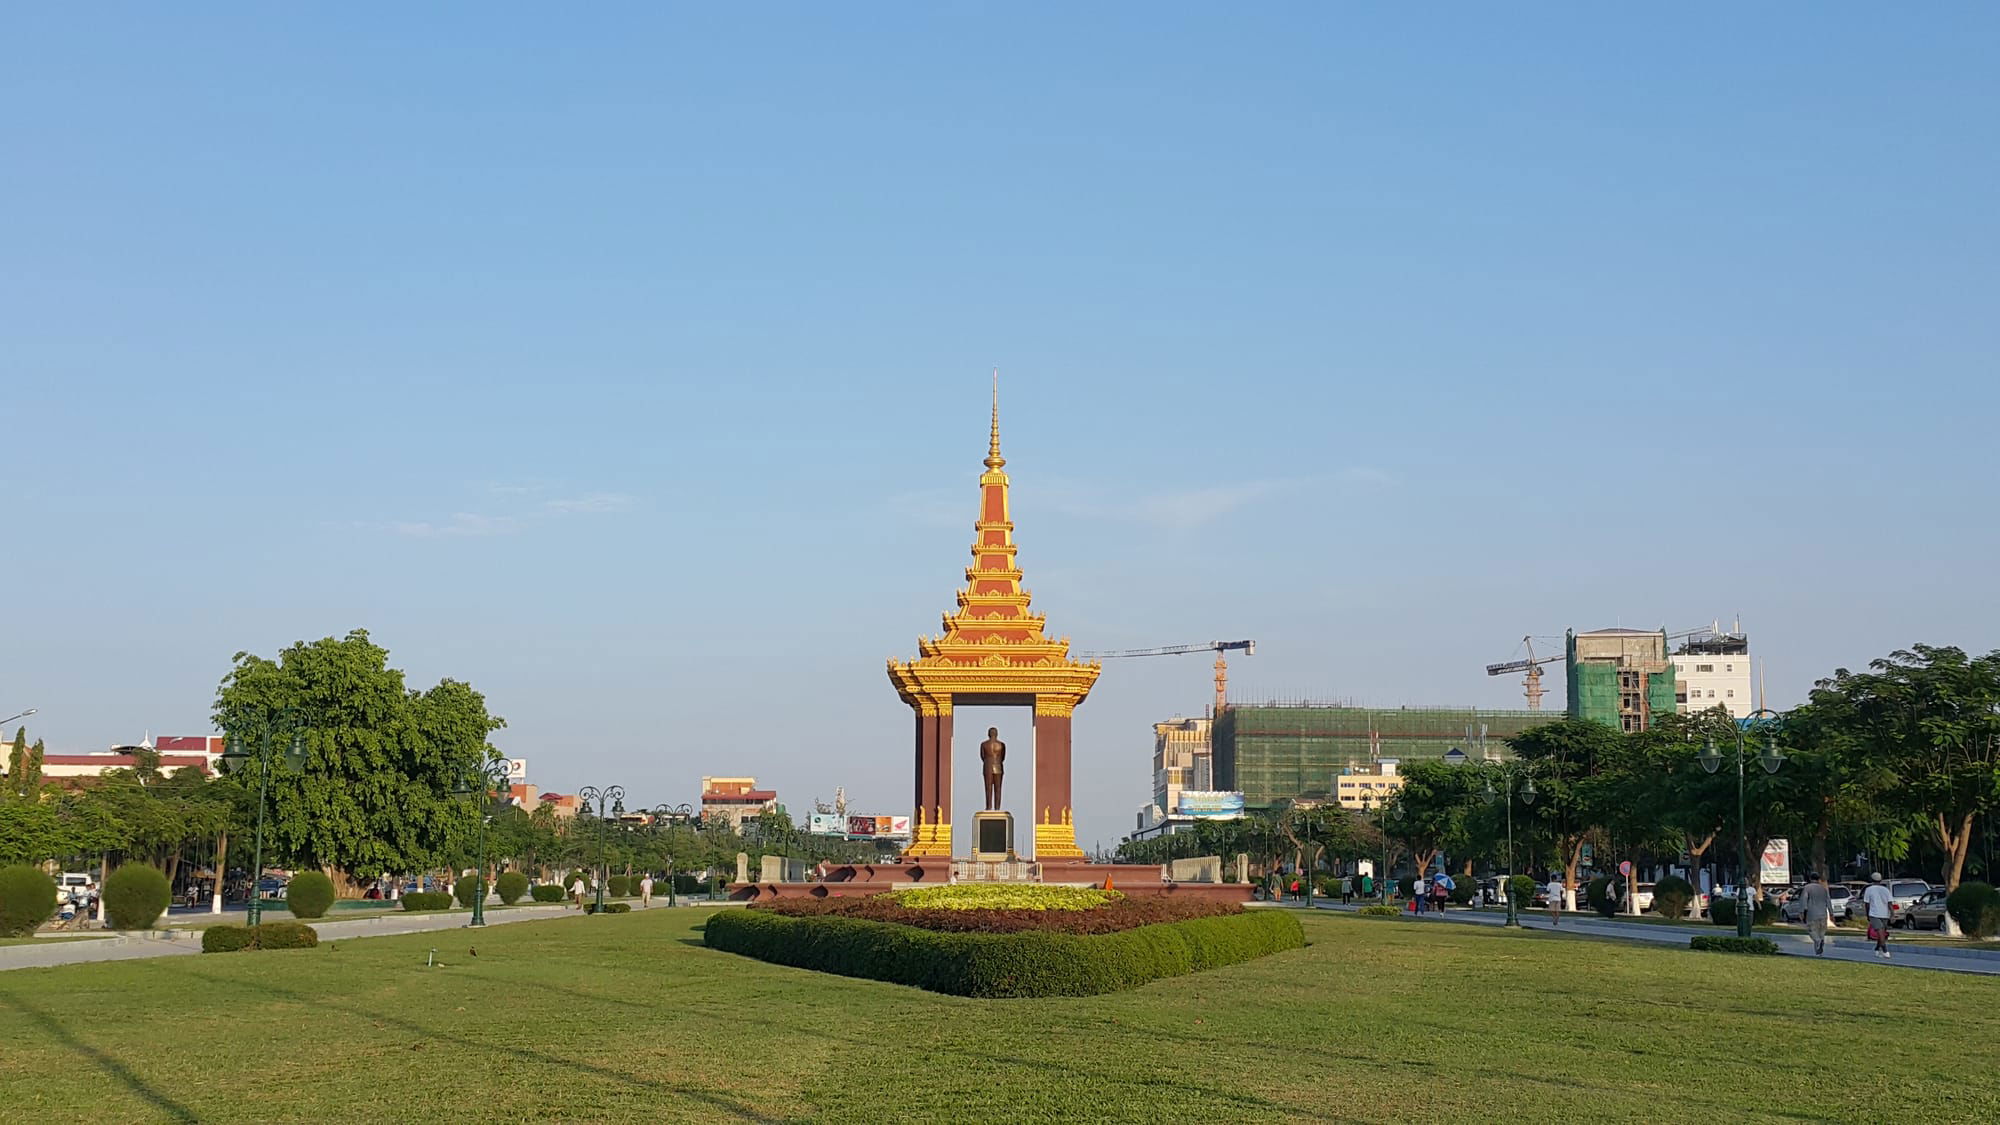 Le monument commémoratif de l'ancien roi Sihanouk 